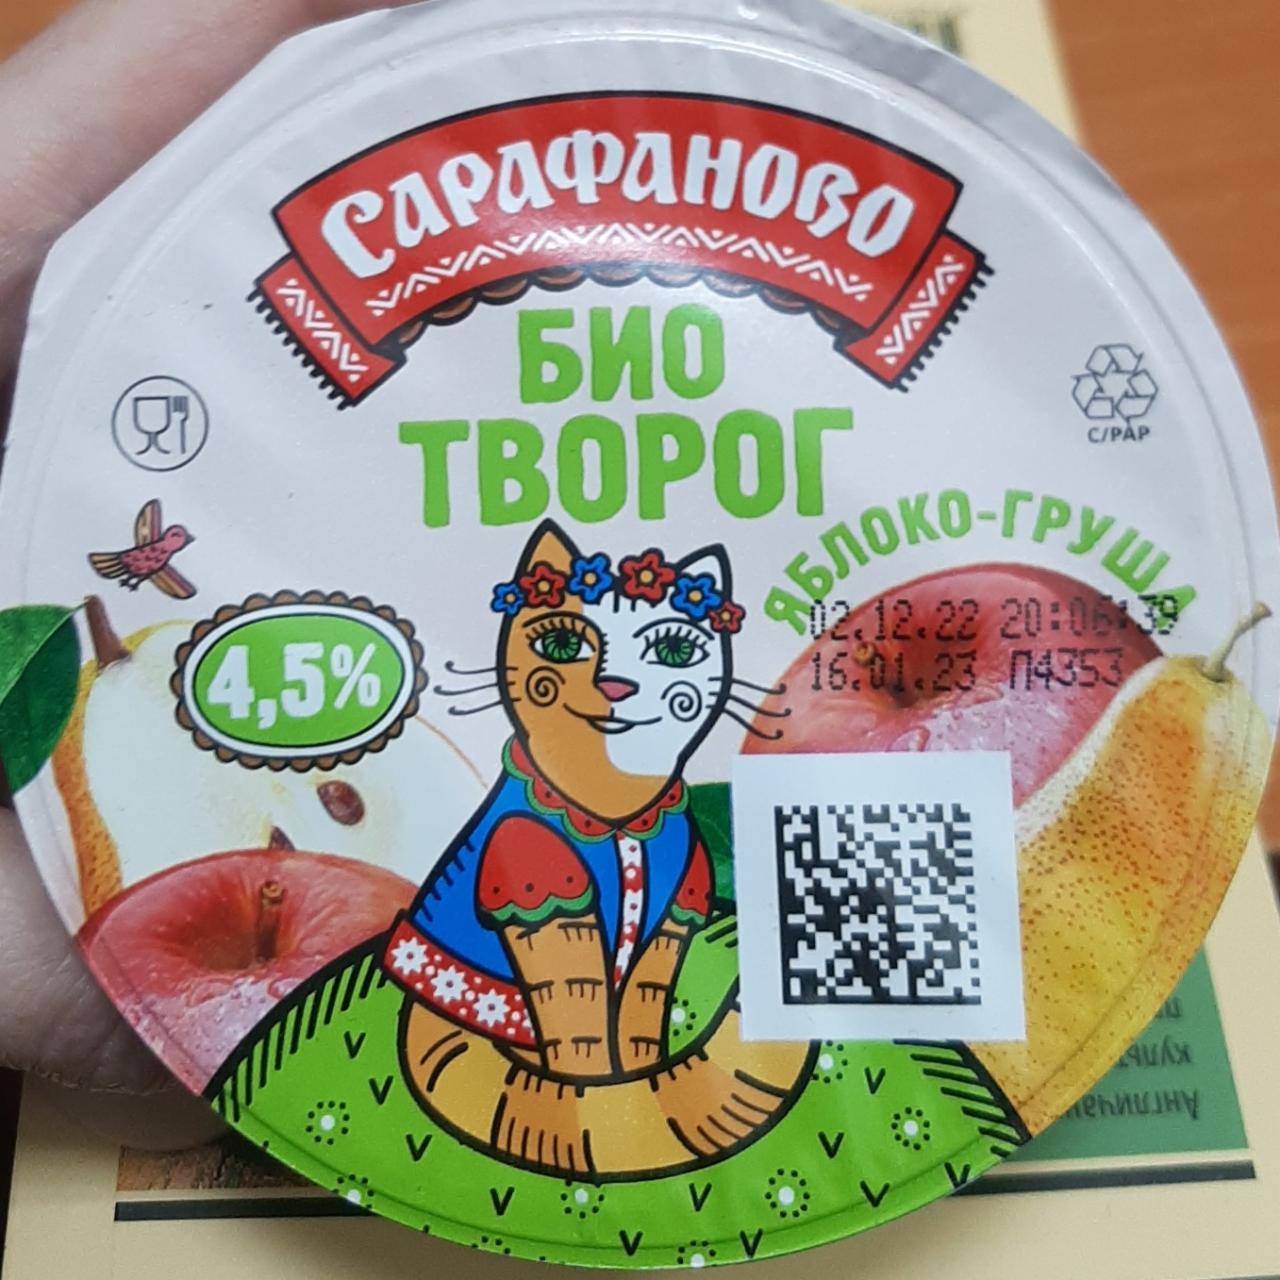 Фото - Биотворог 4.5% яблоко-груша Сарафаново